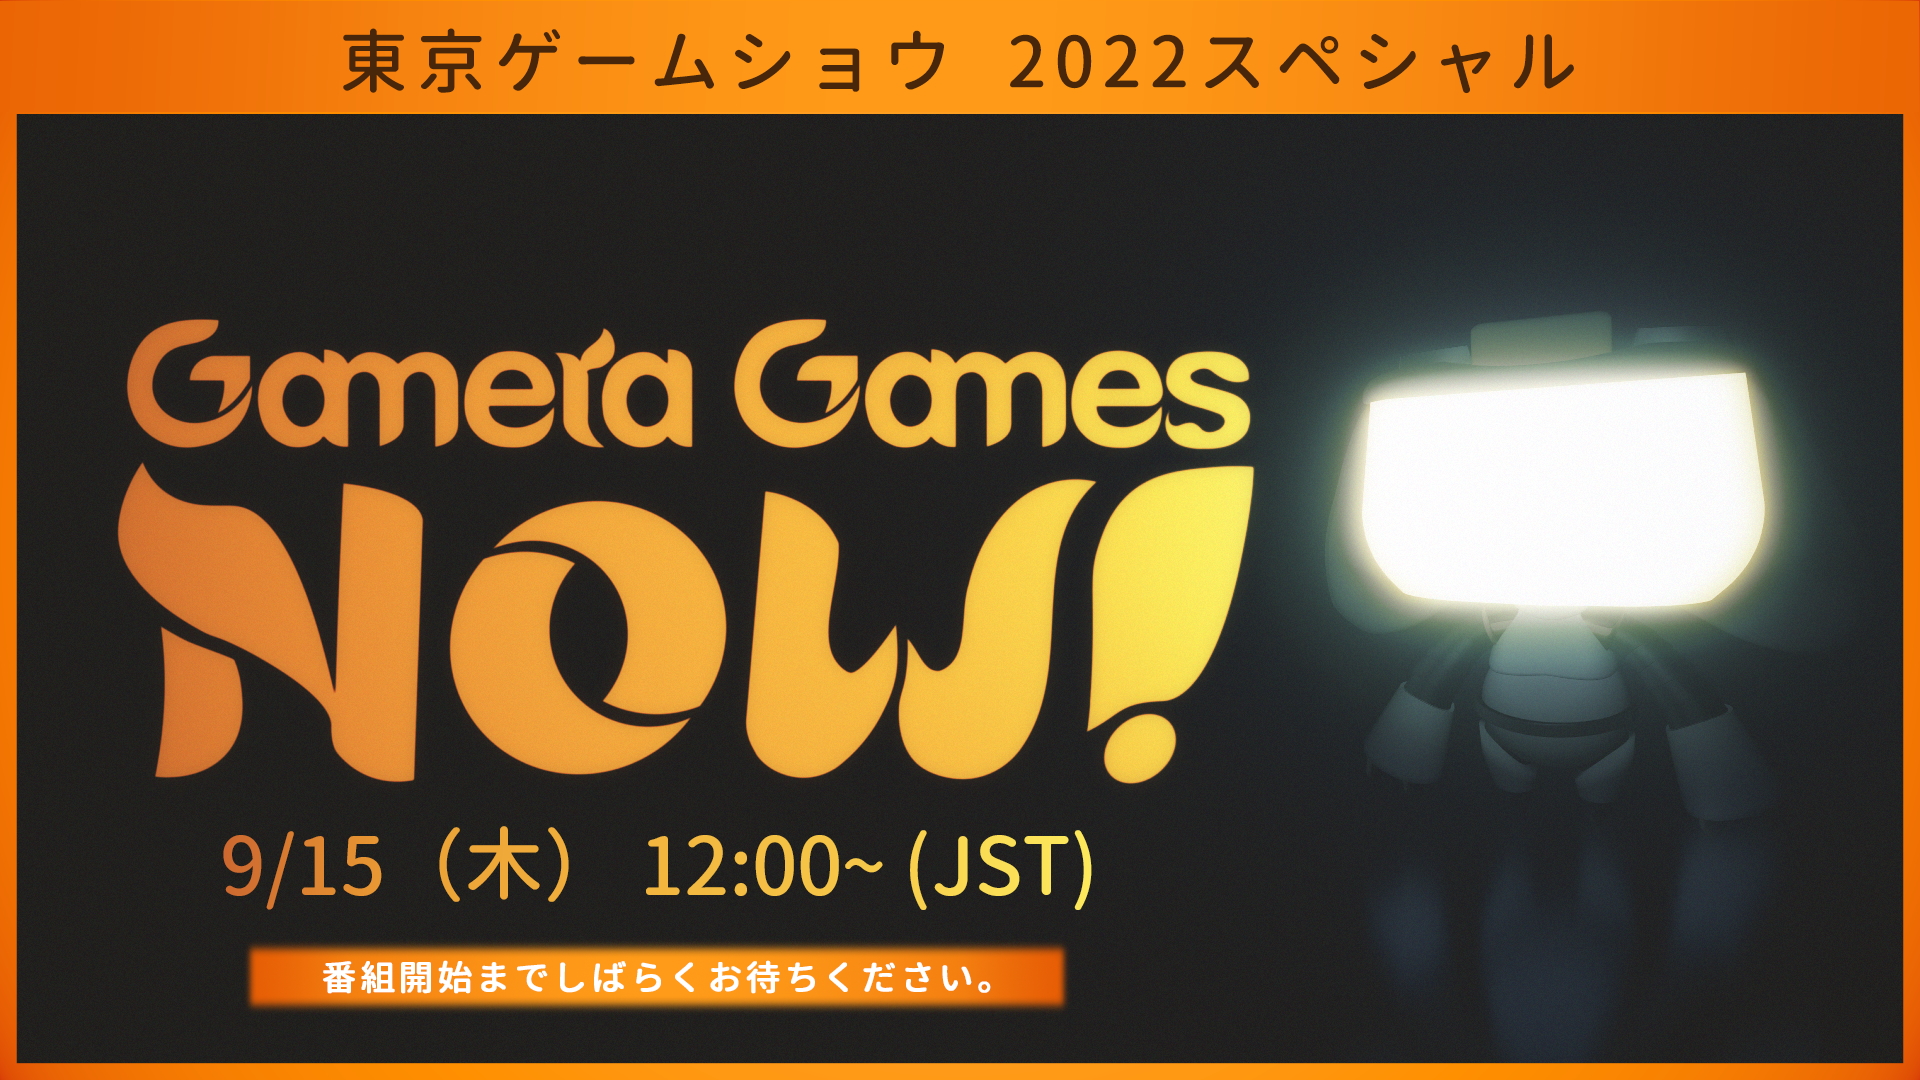 Gamera Games Now 東京ゲームショウ 2022 スペシャル